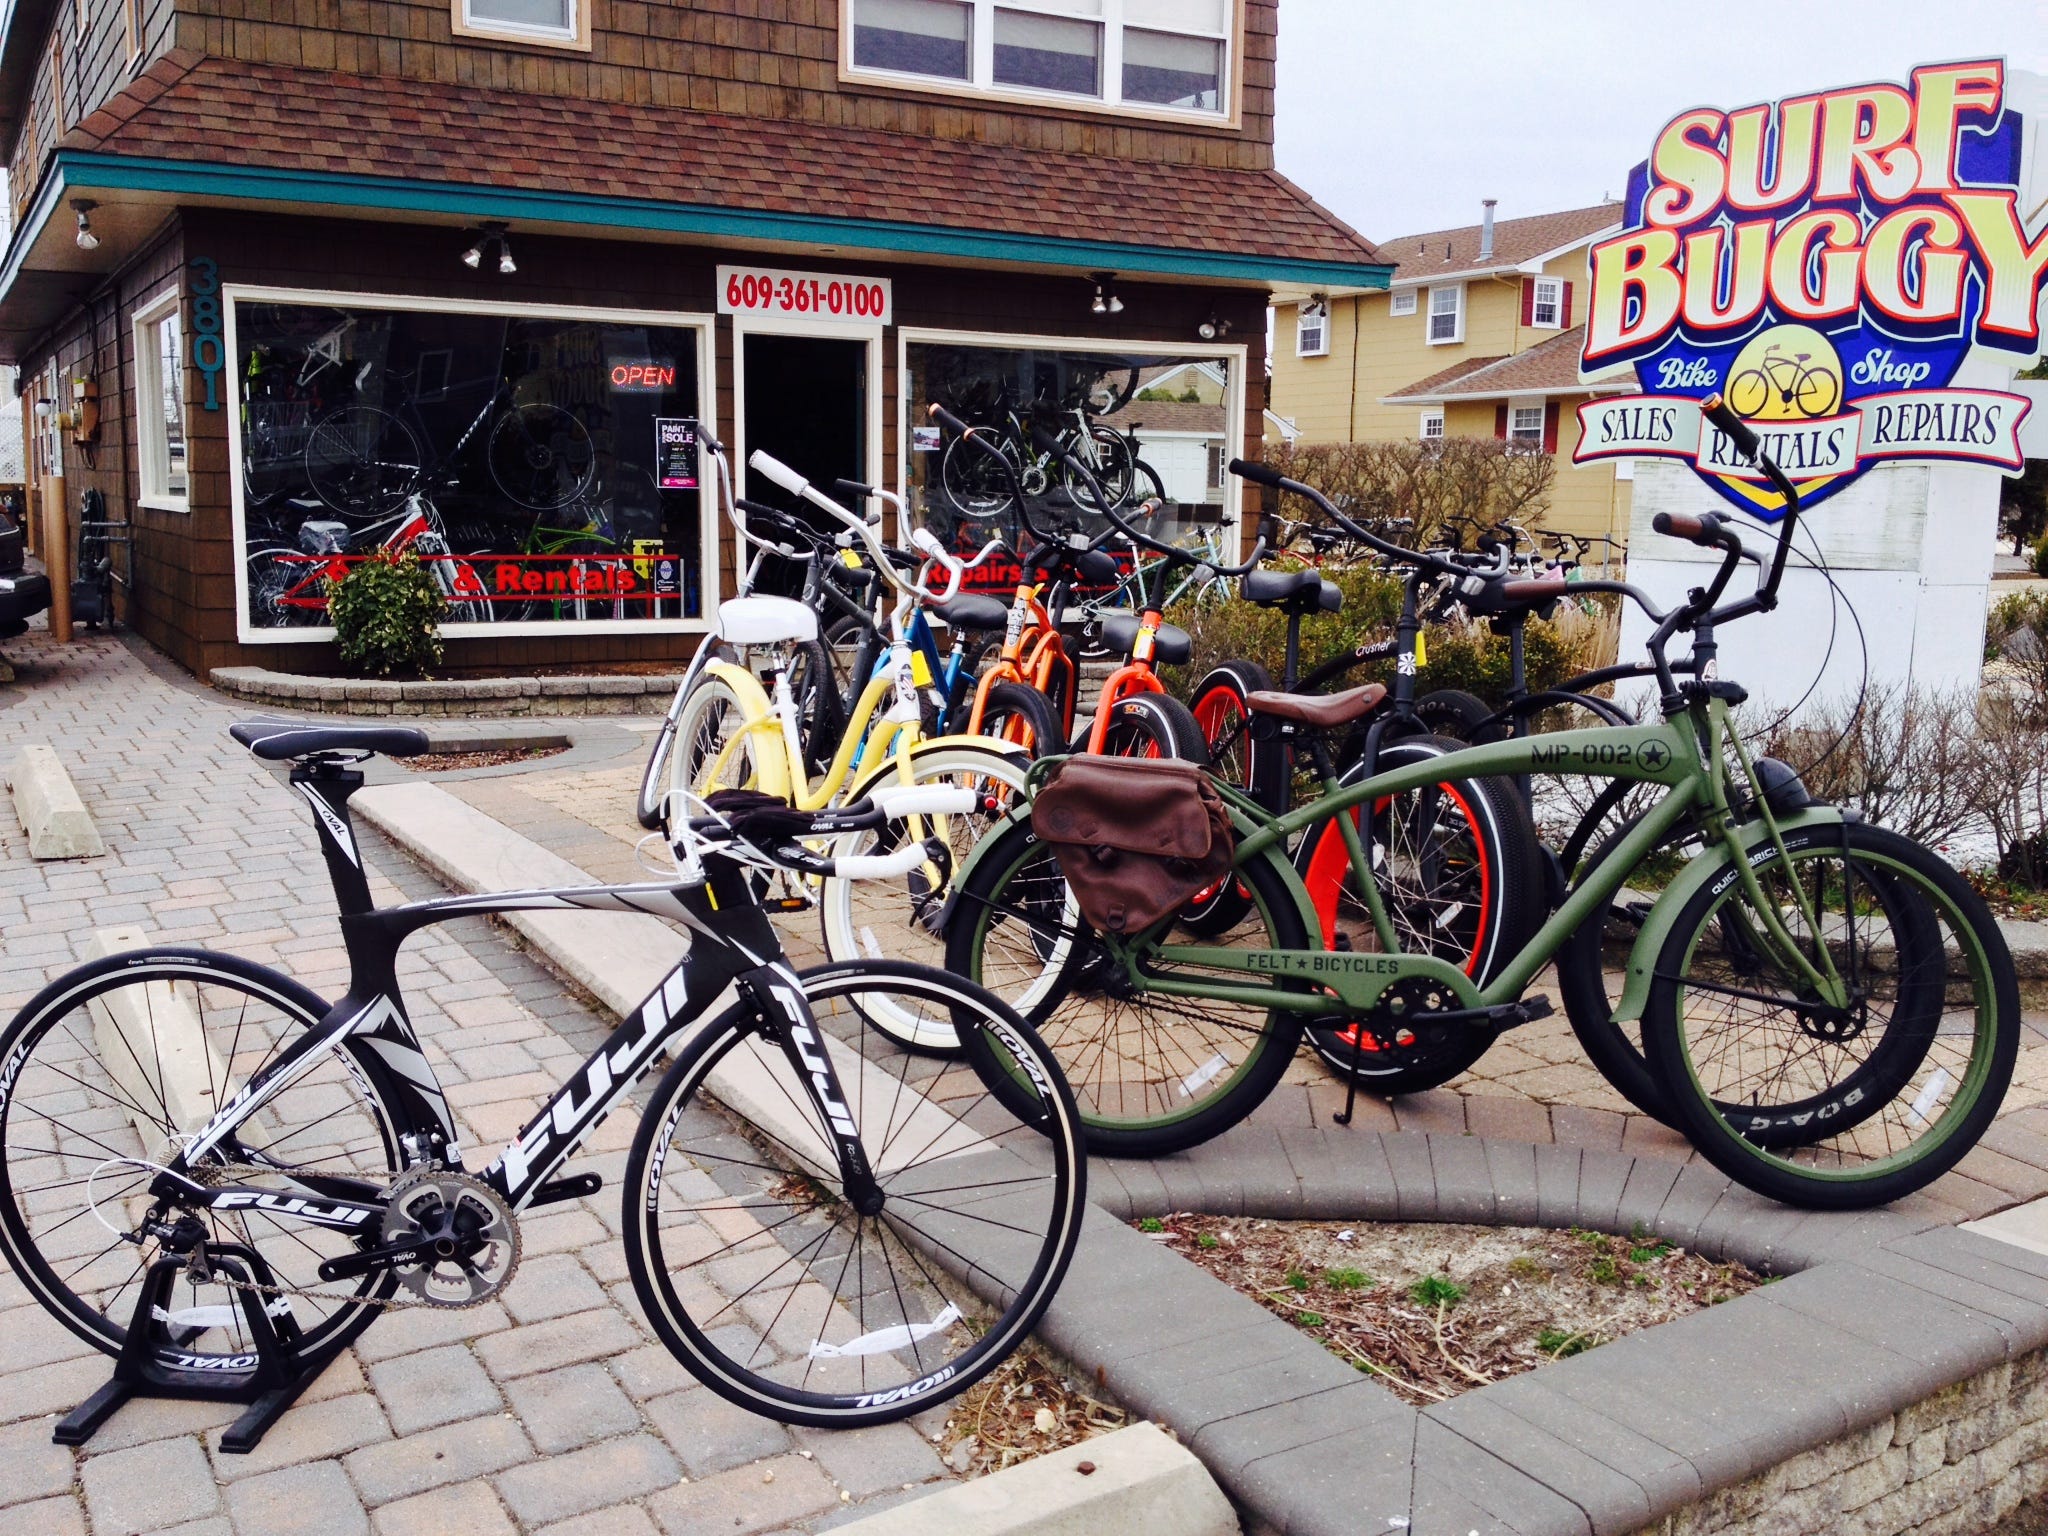 surf buggy bike shop